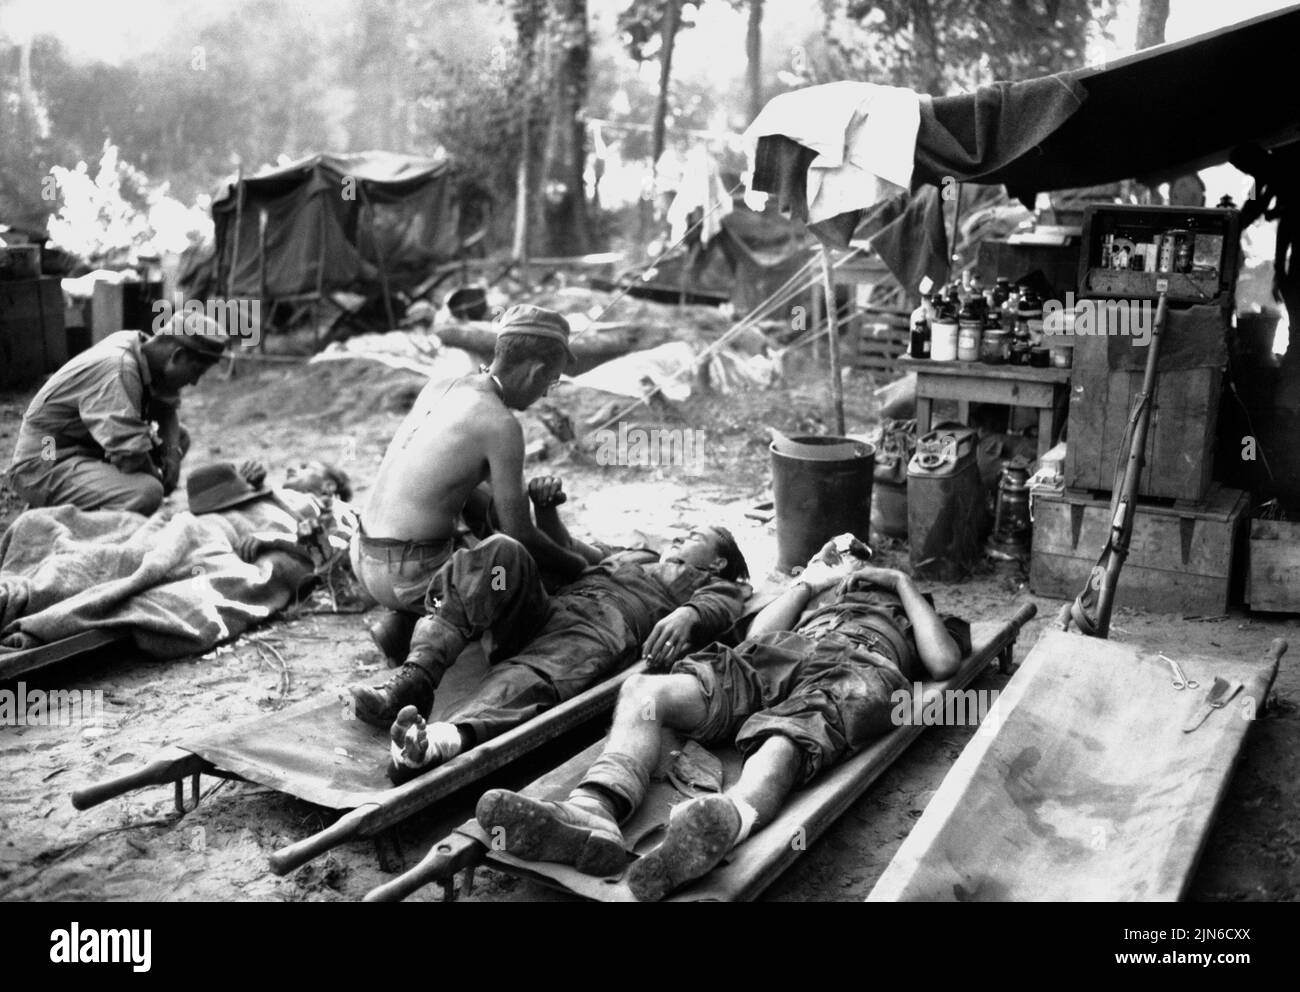 PINWE, BIRMANIA - 12 de noviembre de 1944 - Los médicos del ejército de los EE.UU. Tratan a las víctimas en una unidad quirúrgica portátil americana (la precursora de la M*A*S*H*) durante la década de 36 Foto de stock